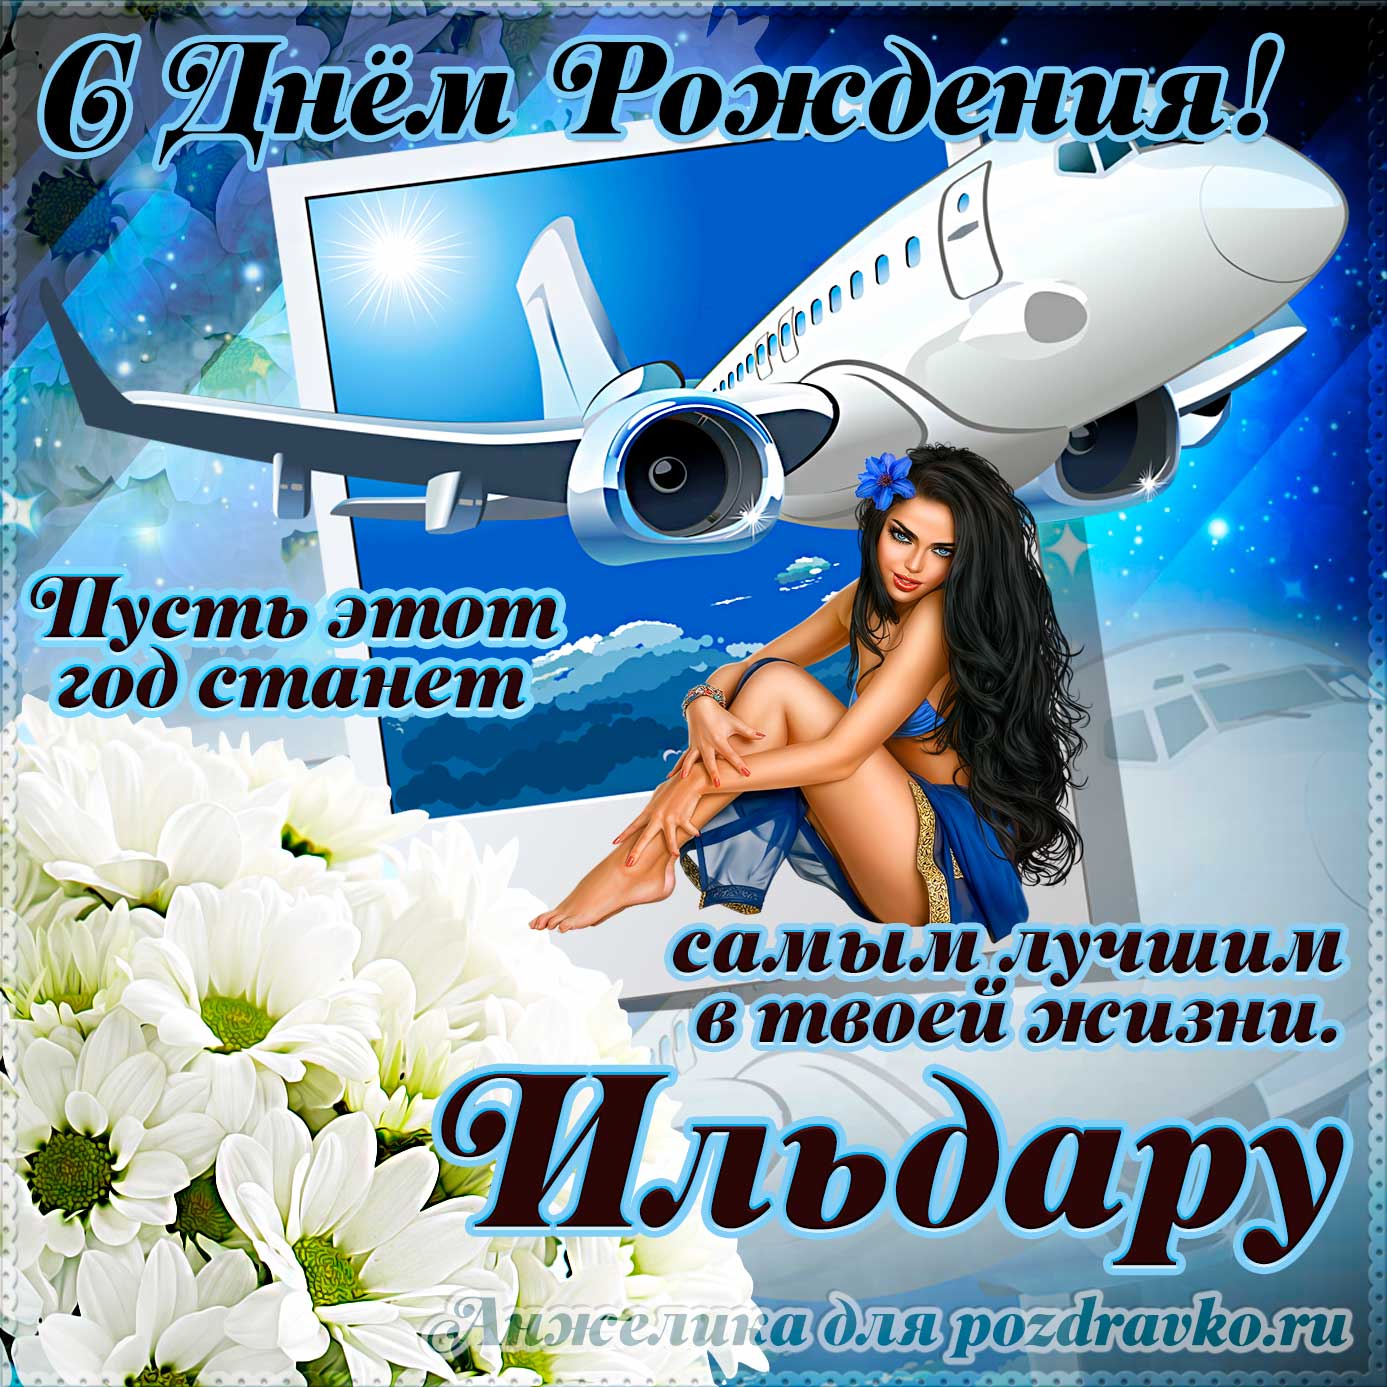 Открытка - Ильдару на день рождения с красивым пожеланием самолетом и девушкой. Скачать бесплатно или отправить картинку.